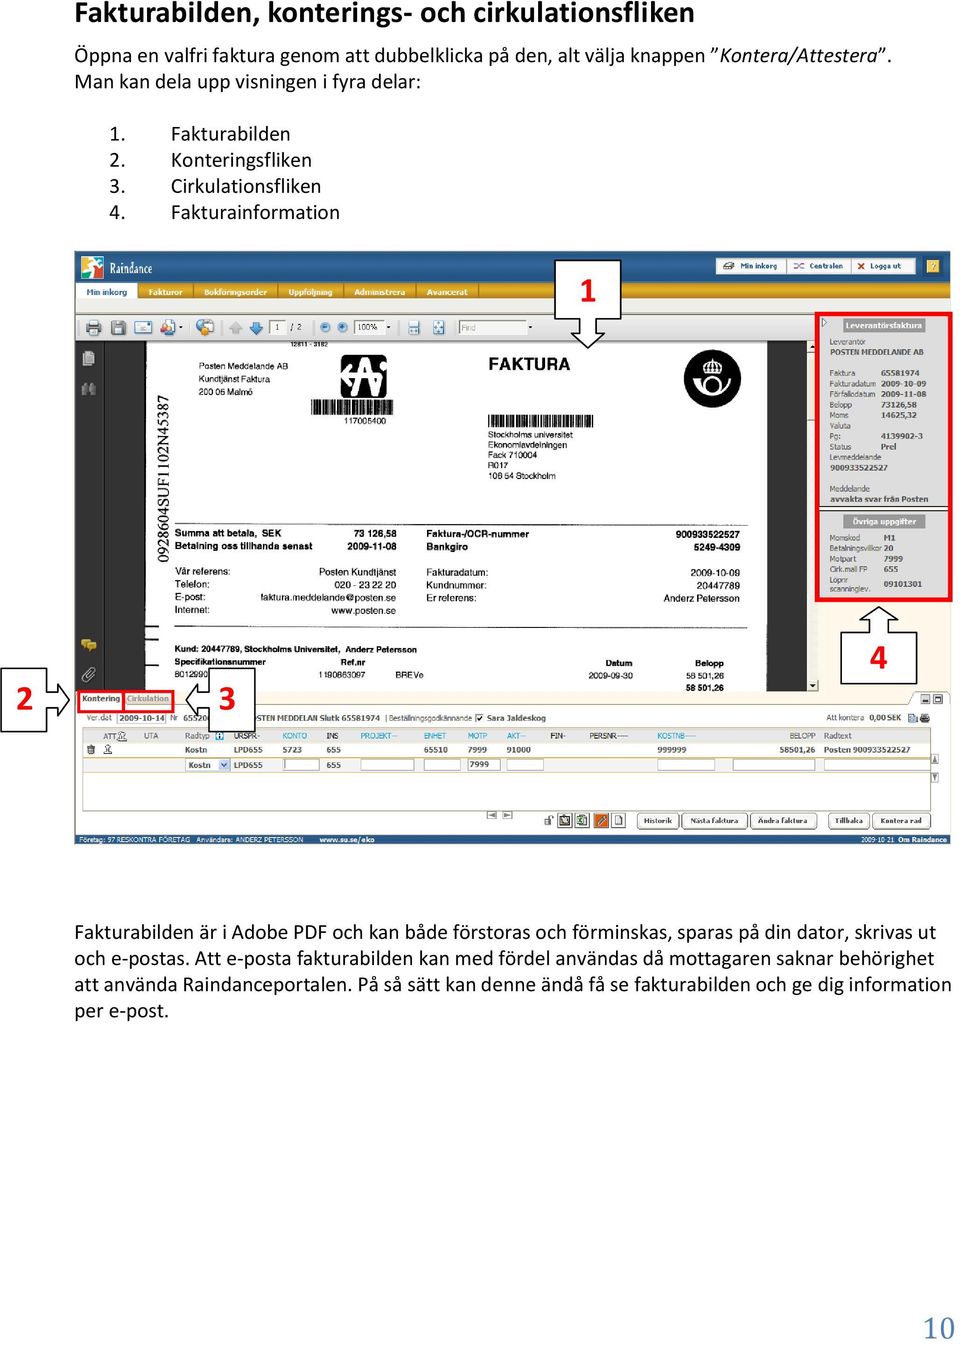 Fakturainformation 1 2 3 4 Fakturabilden är i Adobe PDF och kan både förstoras och förminskas, sparas på din dator, skrivas ut och e-postas.